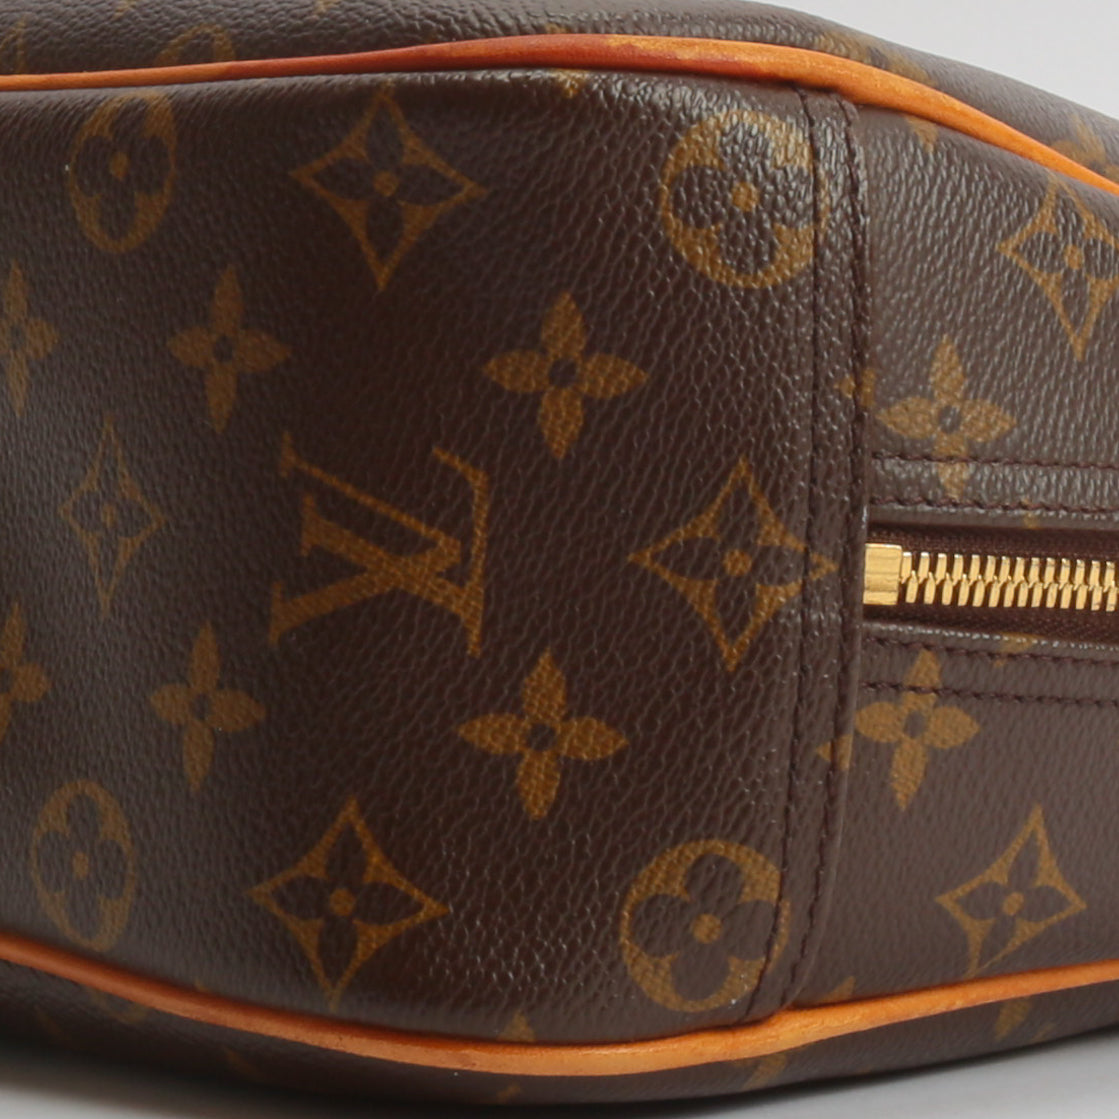 Louis Vuitton, Bags, Louis Vuitton Vintage Brown Trouville Satchel